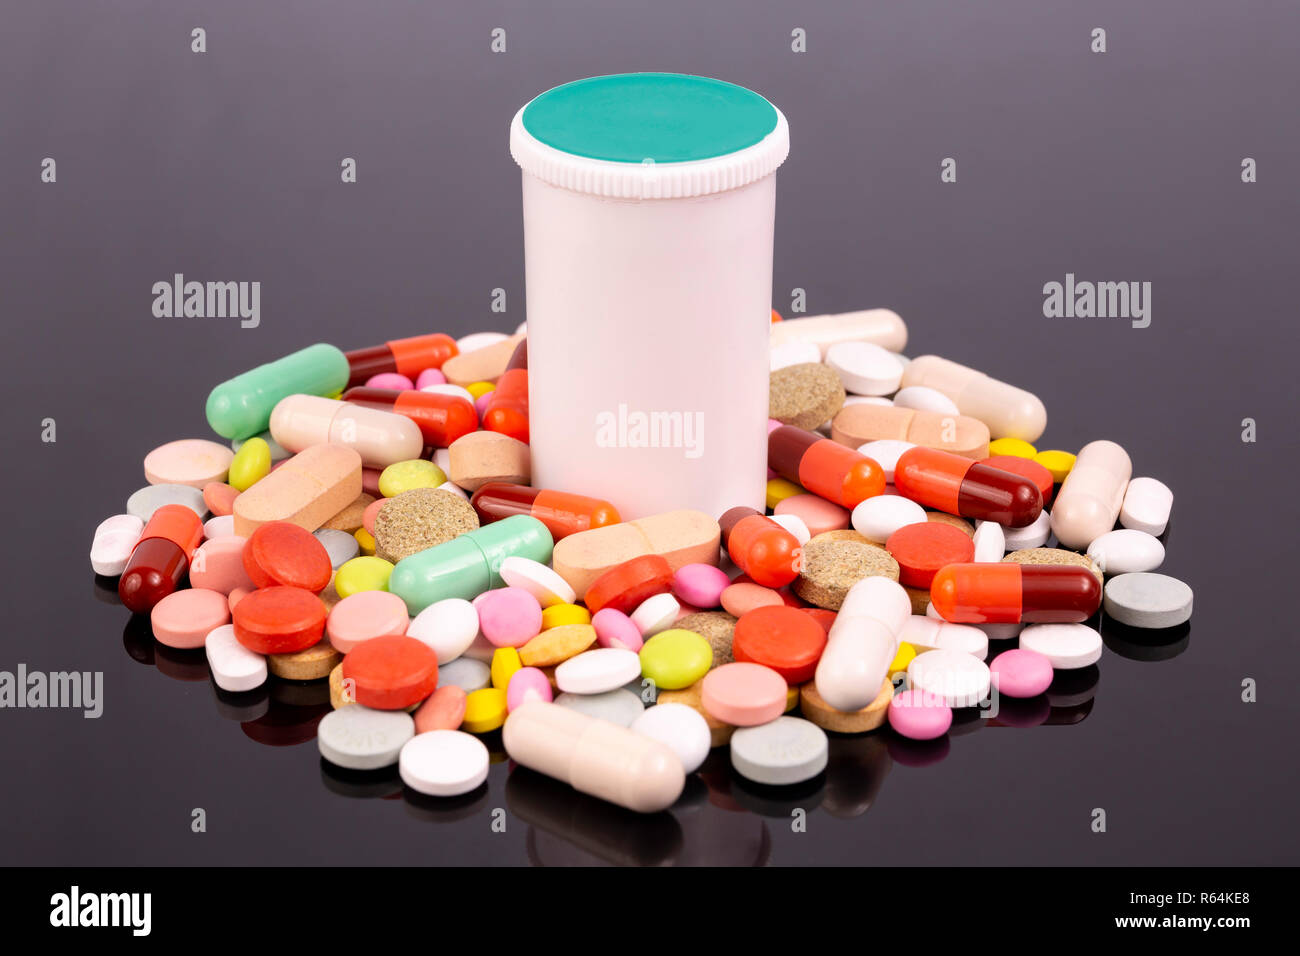 Pilules colorées différentes, des capsules de bouteilles en plastique blanc et noir isolé sur une surface réfléchissante. Industrie pharmaceutique mondiale pour des milliards de dollars Banque D'Images